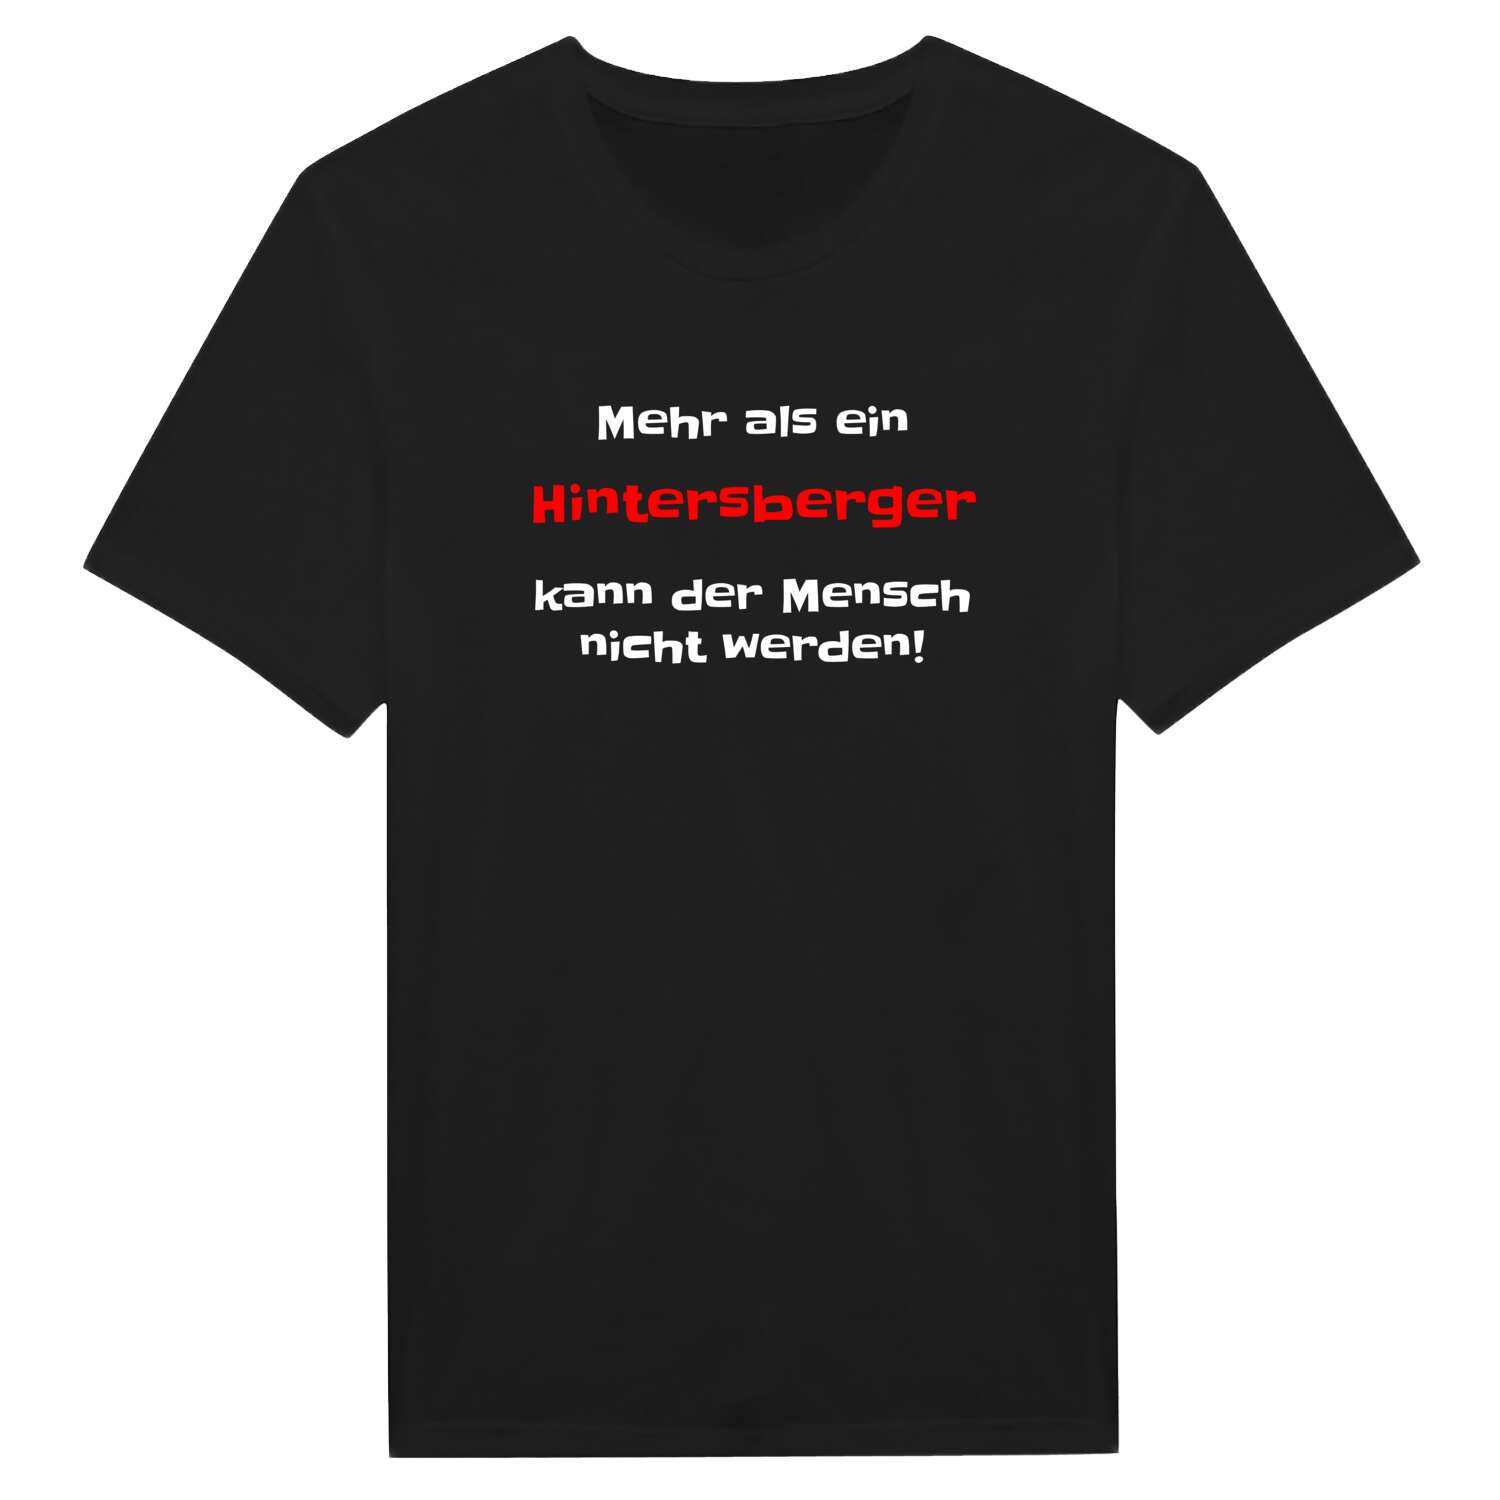 Hintersberg T-Shirt »Mehr als ein«